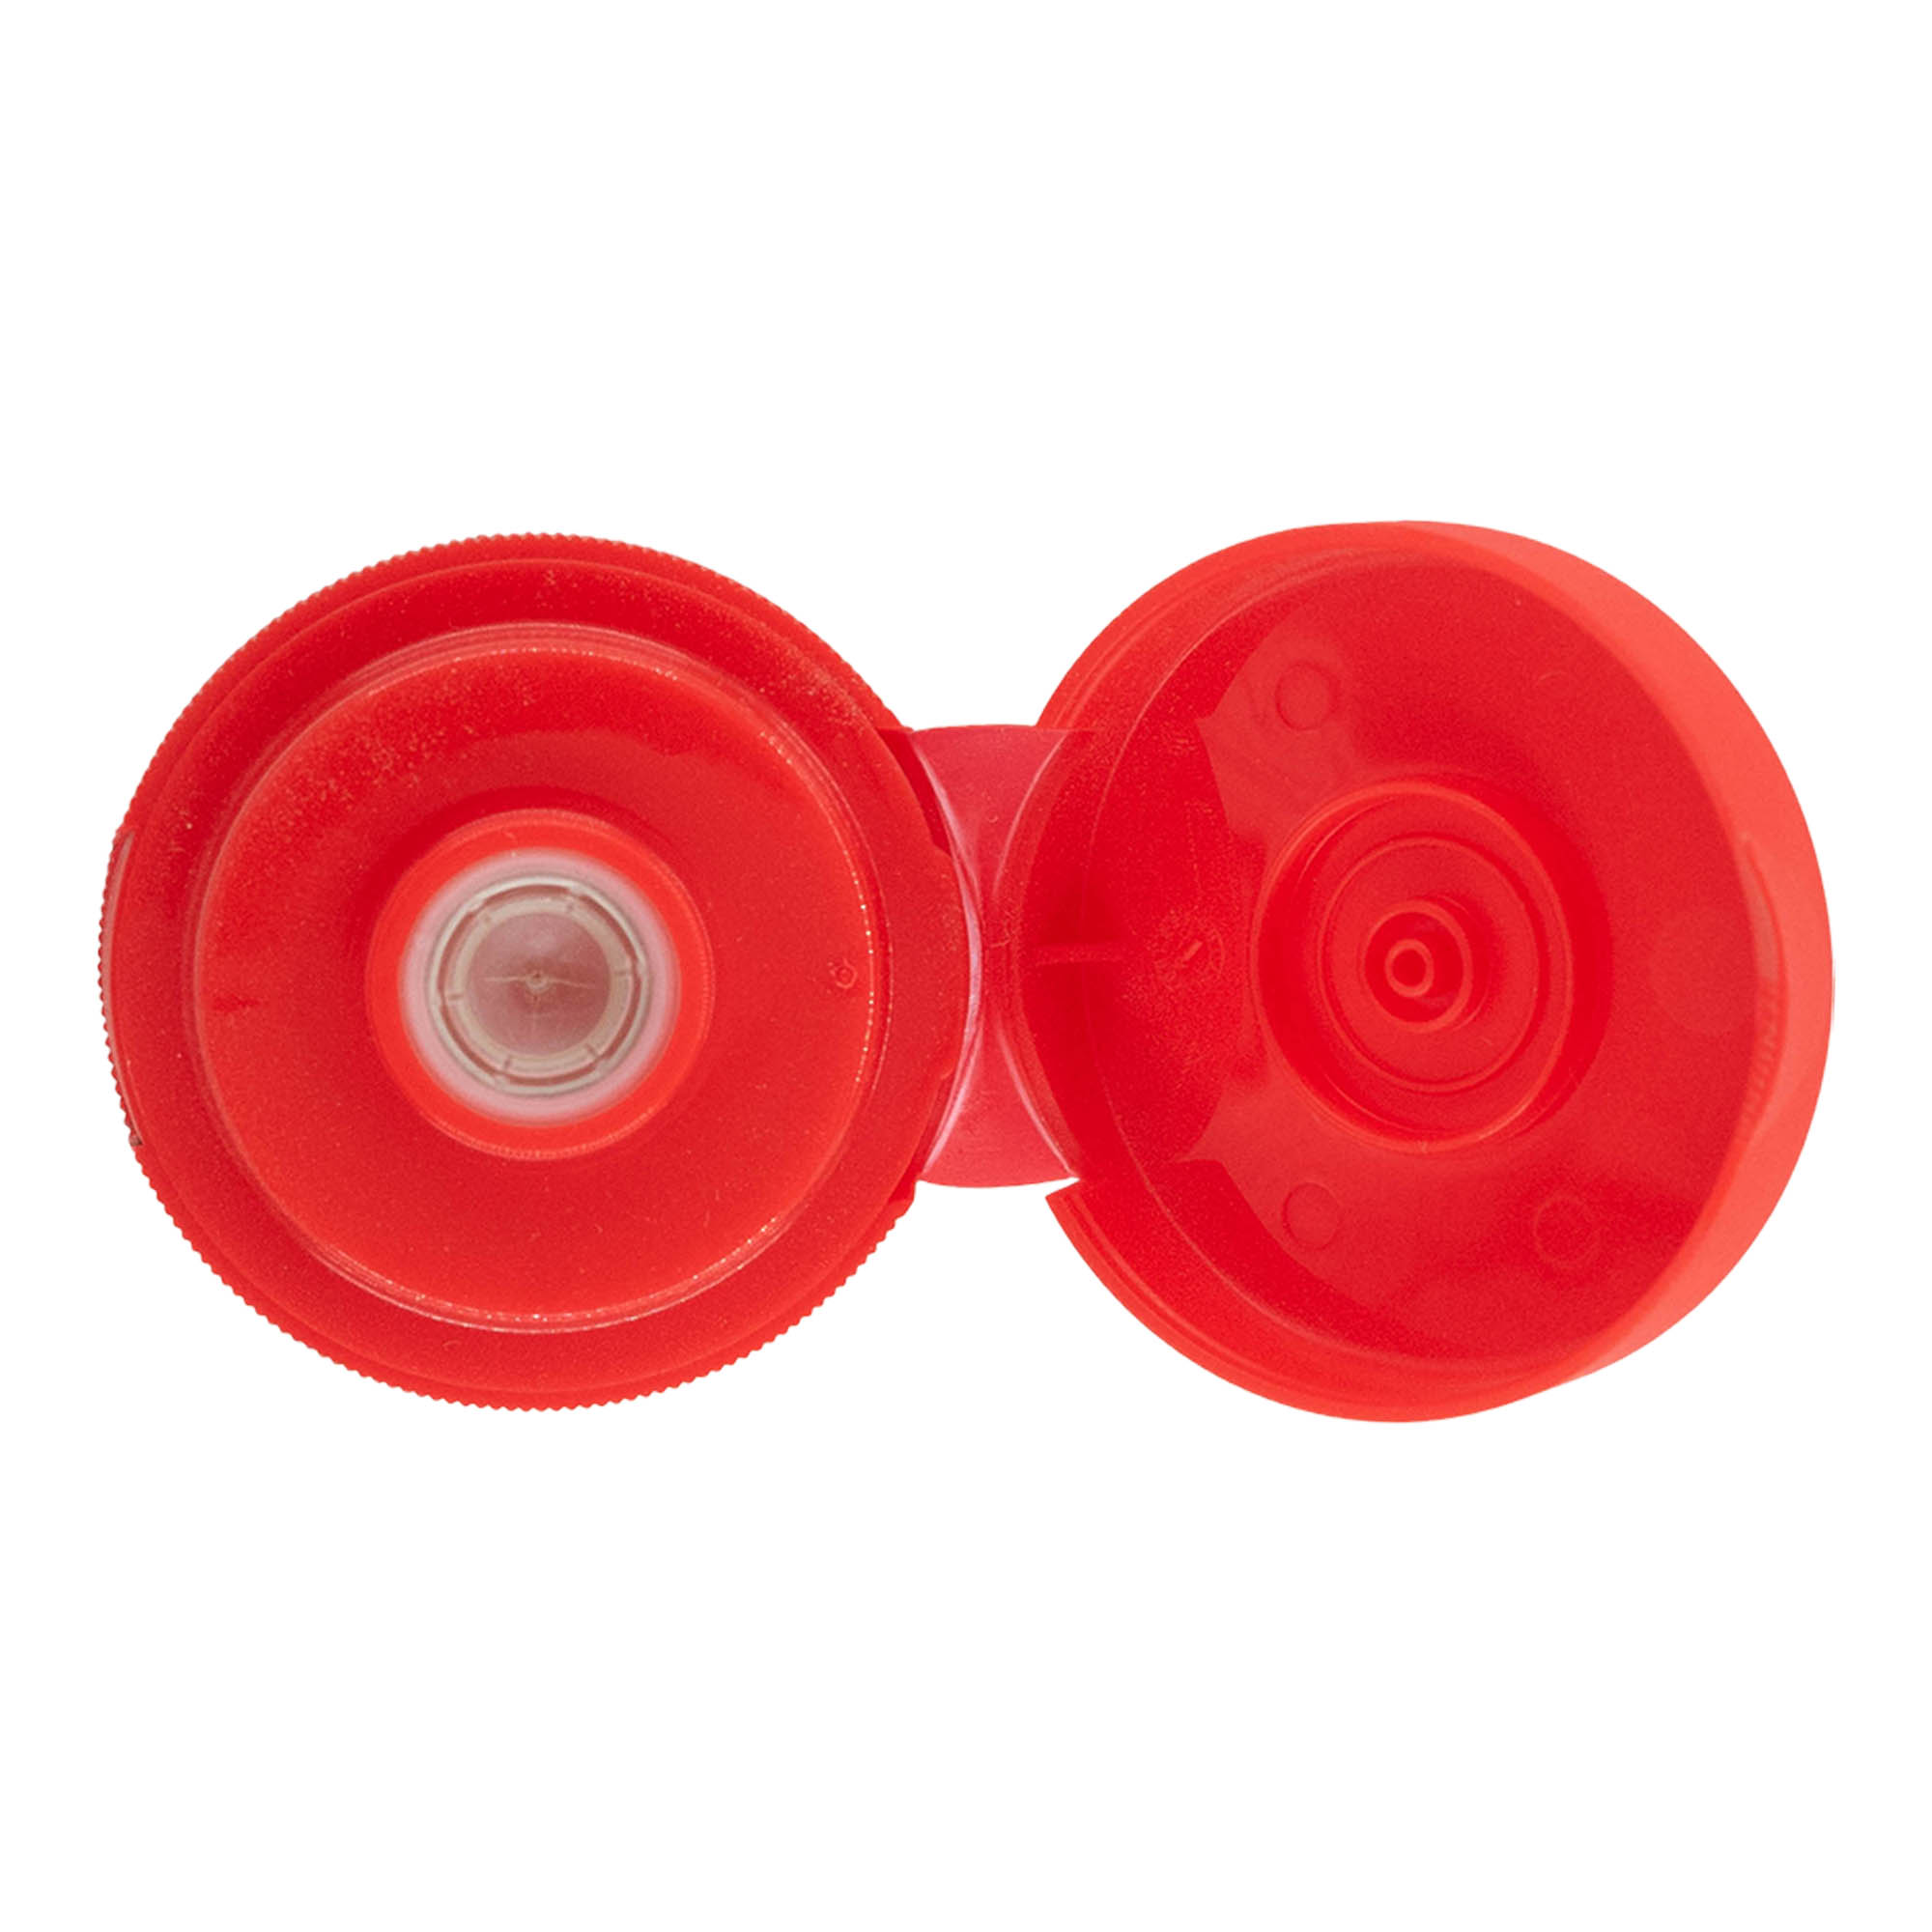 Schroefsluiting klapscharnier, PP-kunststof, rood, voor monding: GPI 38/400